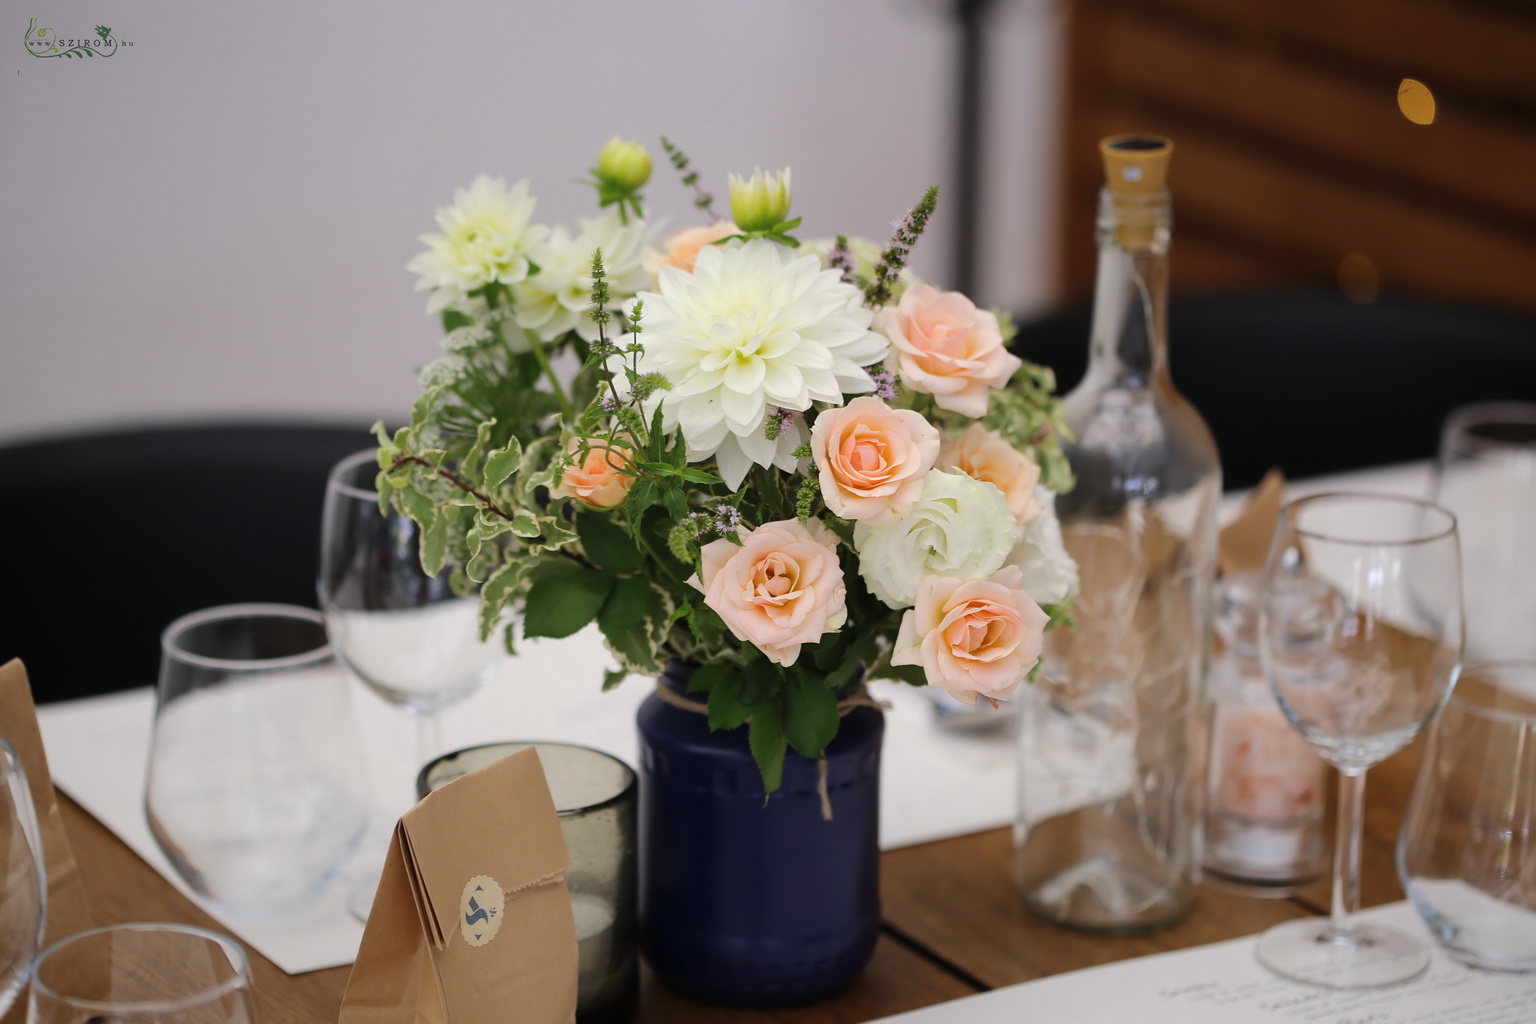 Virágküldés Budapest - Esküvői asztaldísz befőttes üvegben, A KERT Bisztró Budapest (bokros rózsa, dália, mezei virágok, barack, fehér, kék)